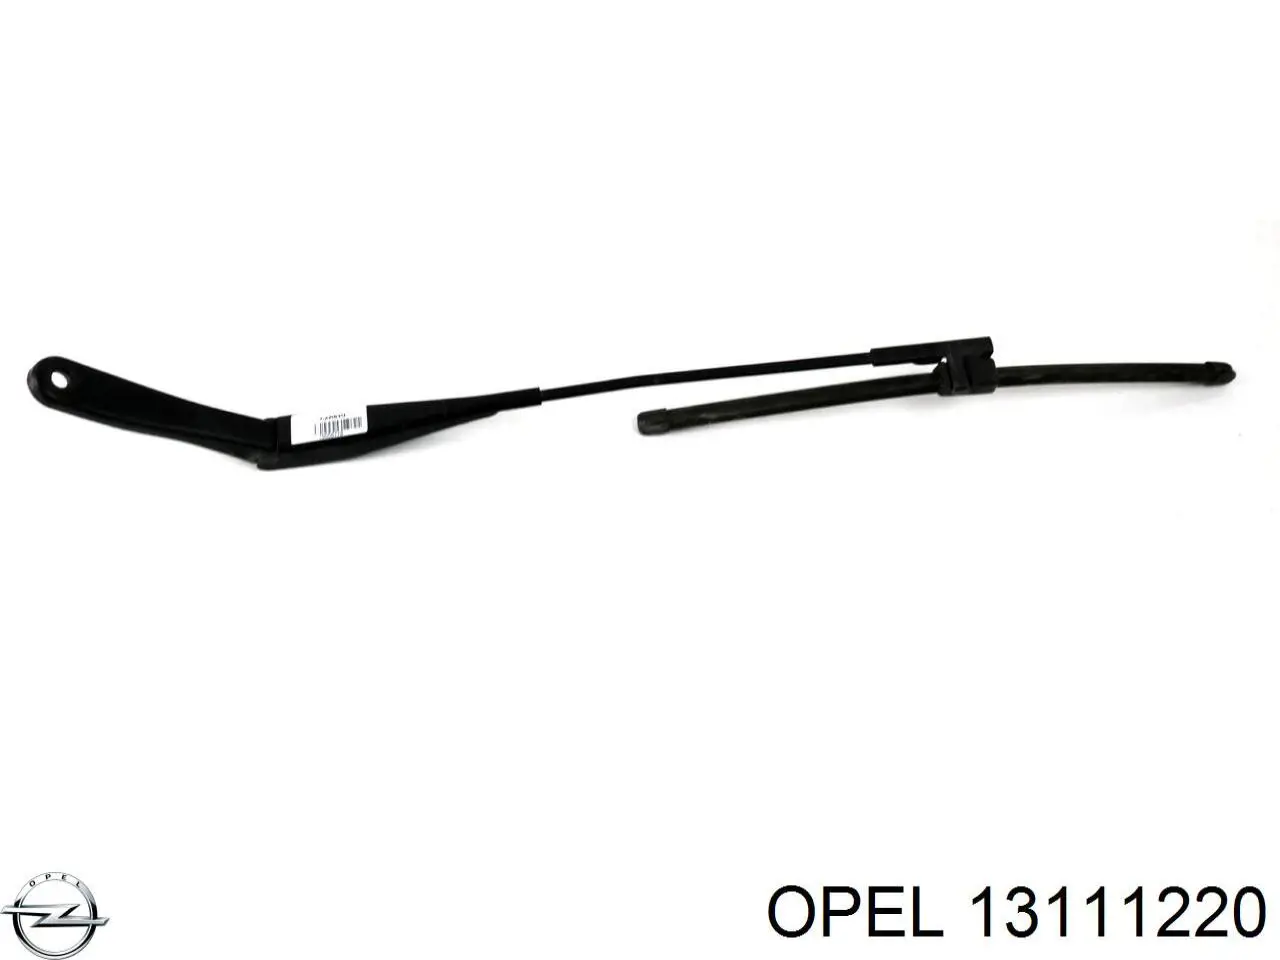 13111220 Opel